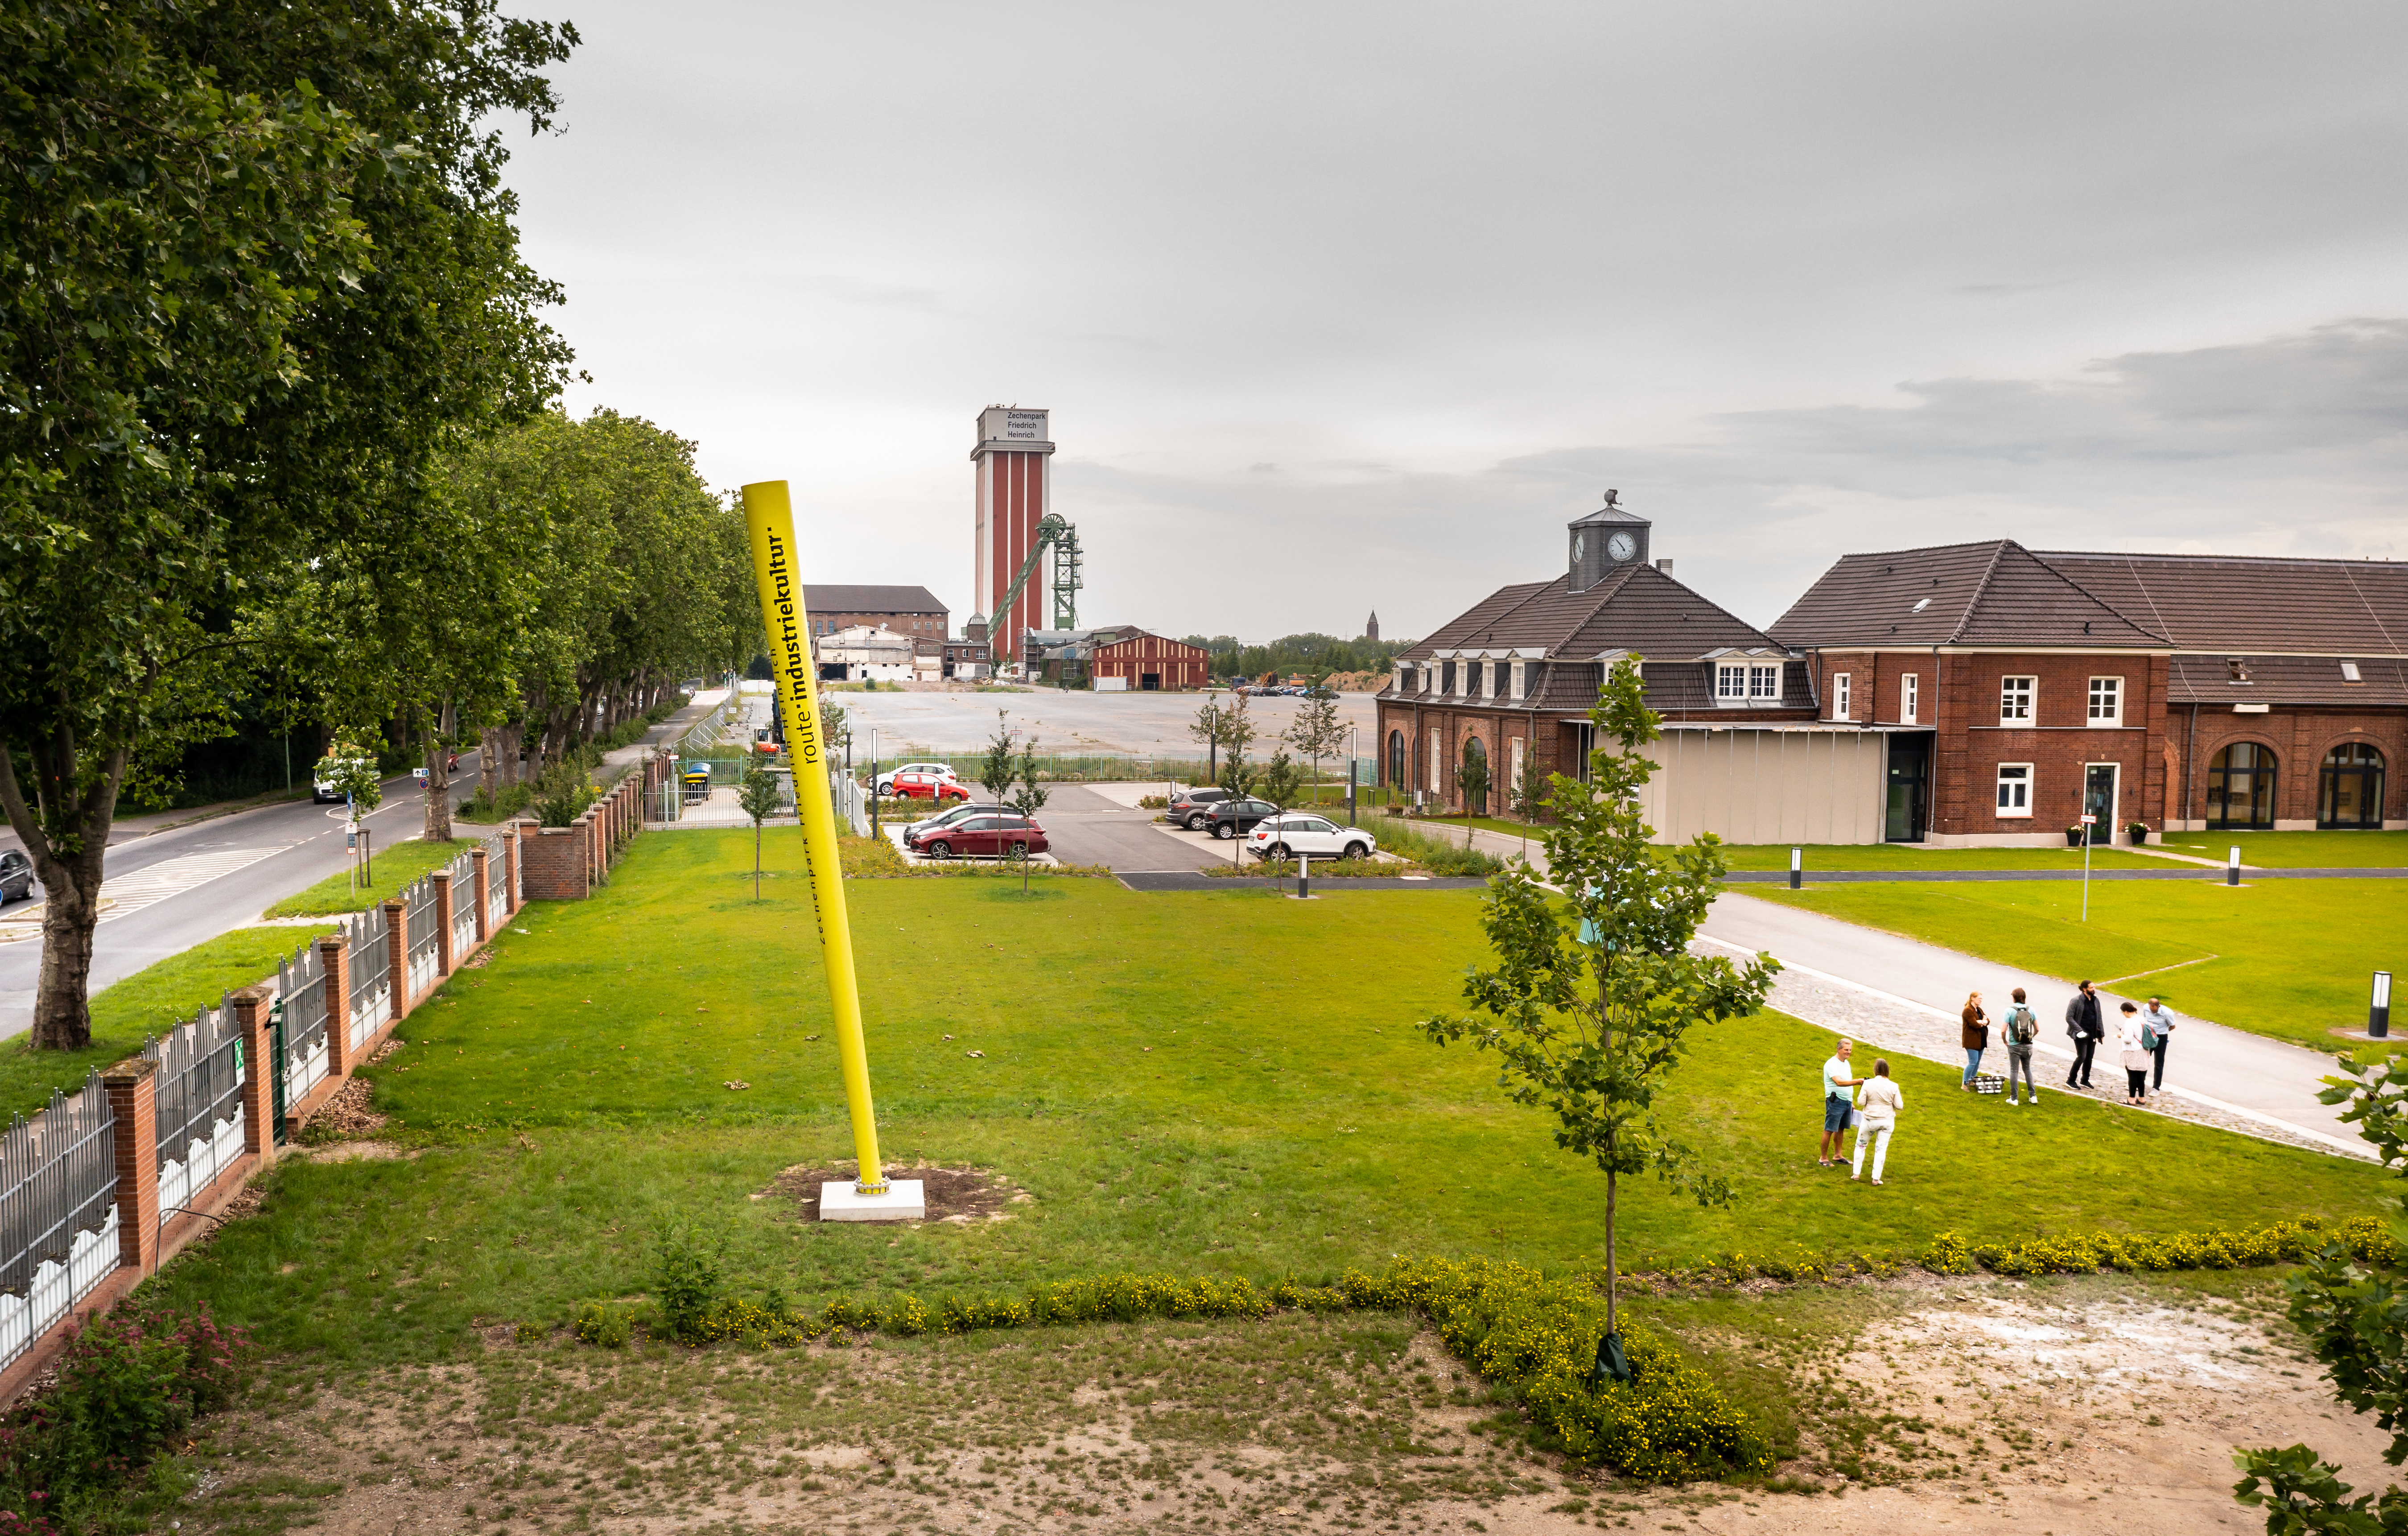 Aufstellung des Signalobjekts der Route Industriekultur im Zechenpark Friedrich Heinrich in Kamp-Lintfort am 8. Juli 2021.